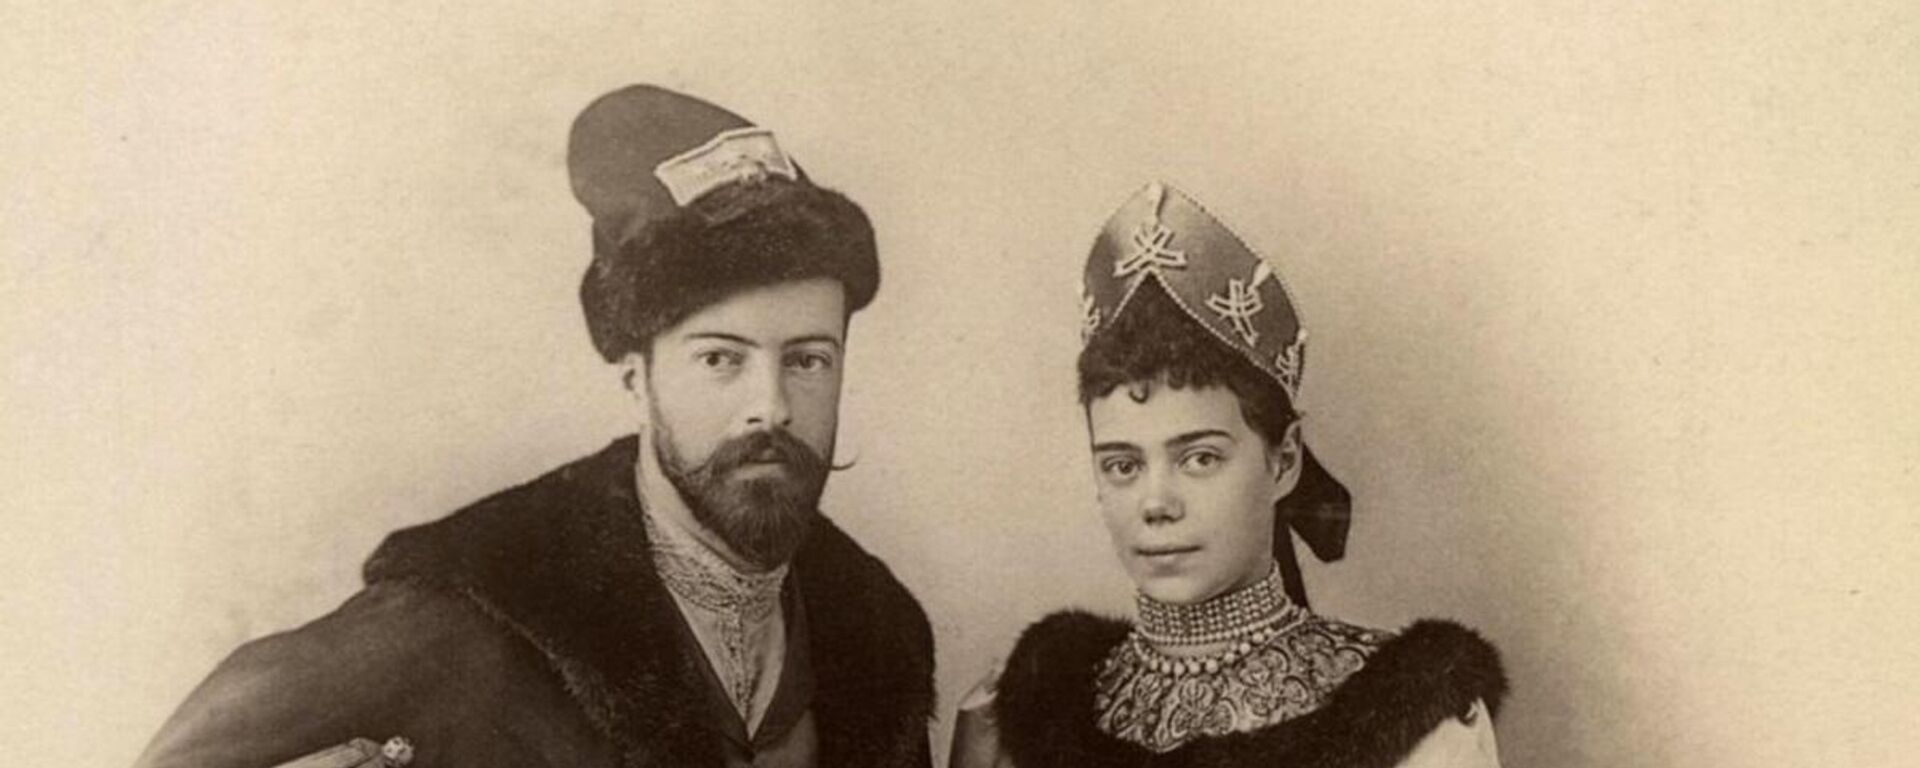 La gran duquesa Xenia junto a su esposo, Alejandro Románov, en 1894 - Sputnik Mundo, 1920, 17.12.2021